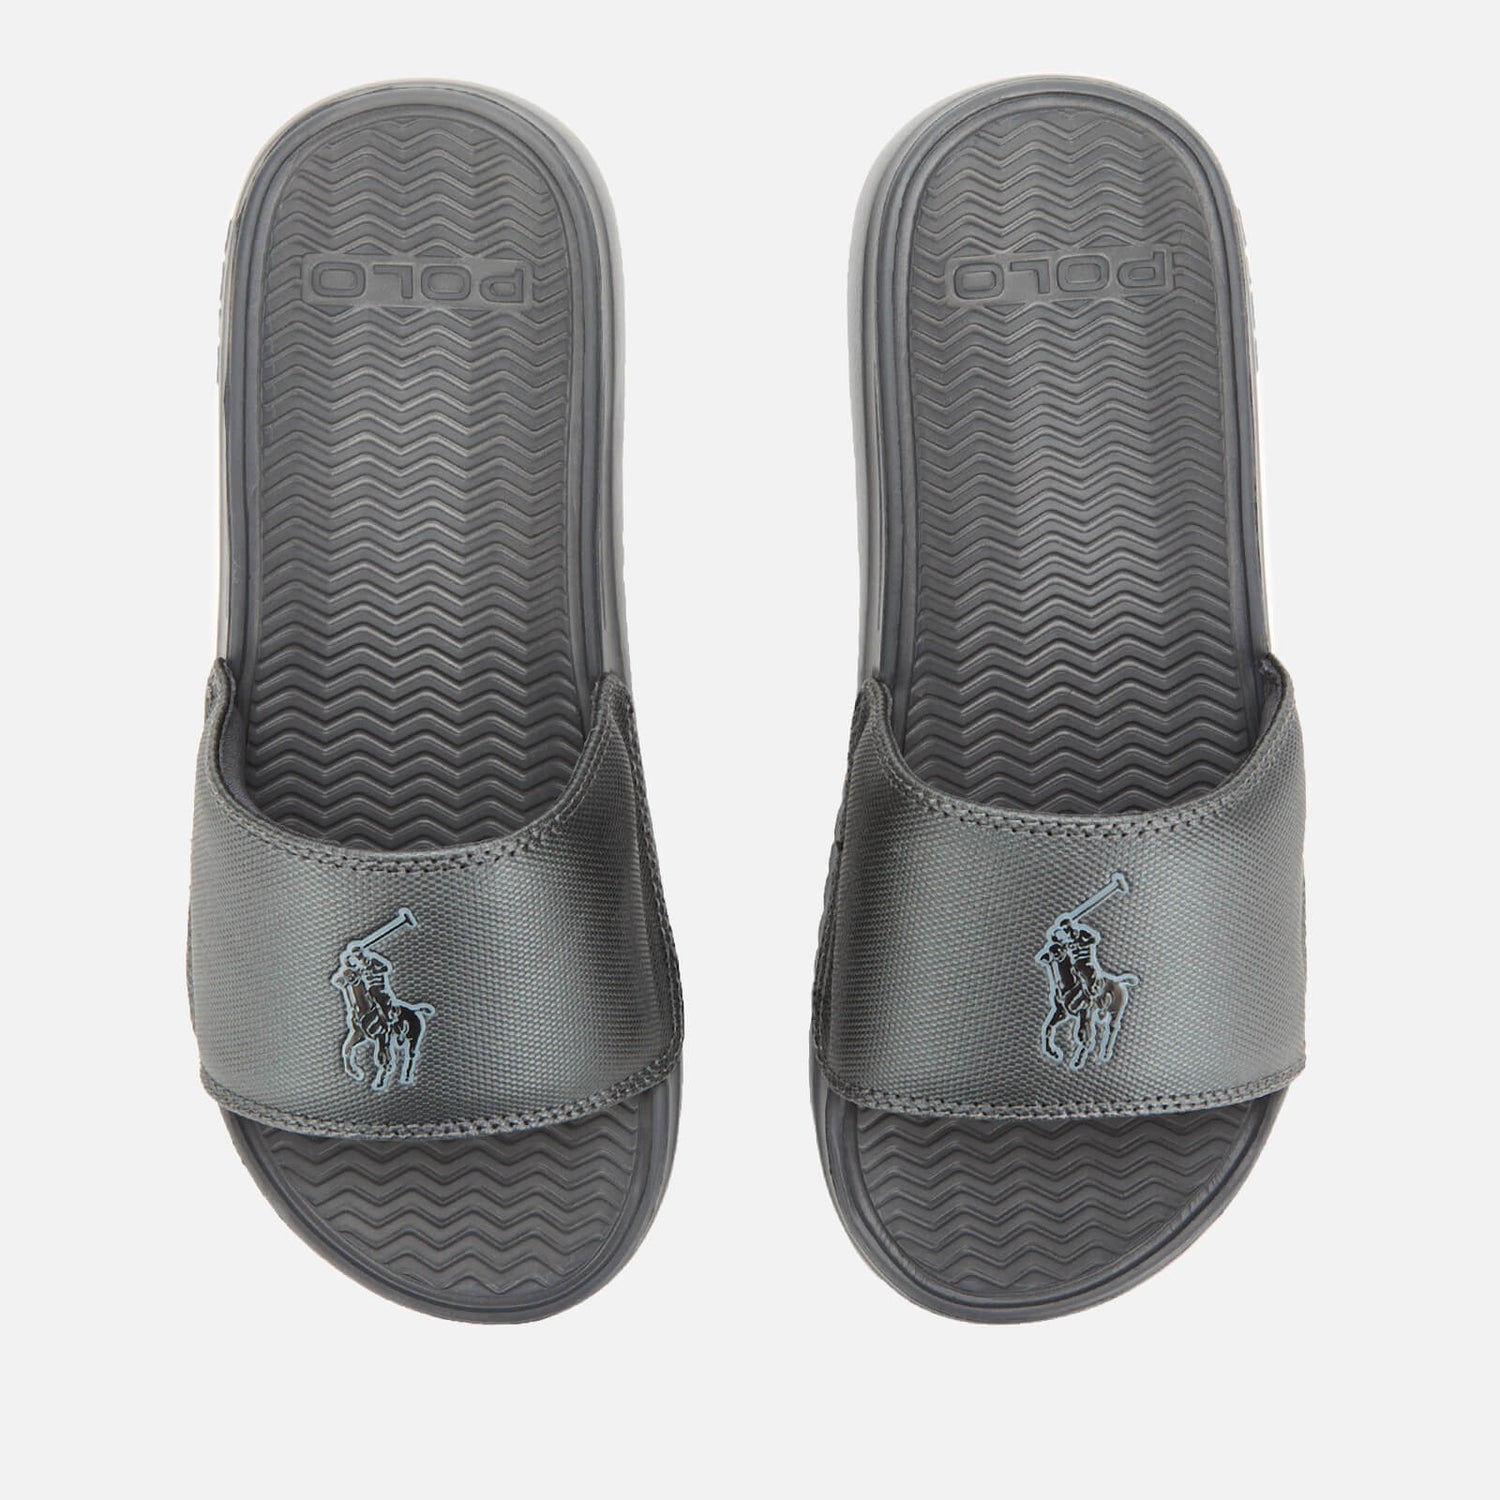 Polo Ralph Lauren Men's Rodwell Slide Sandals - Grey 